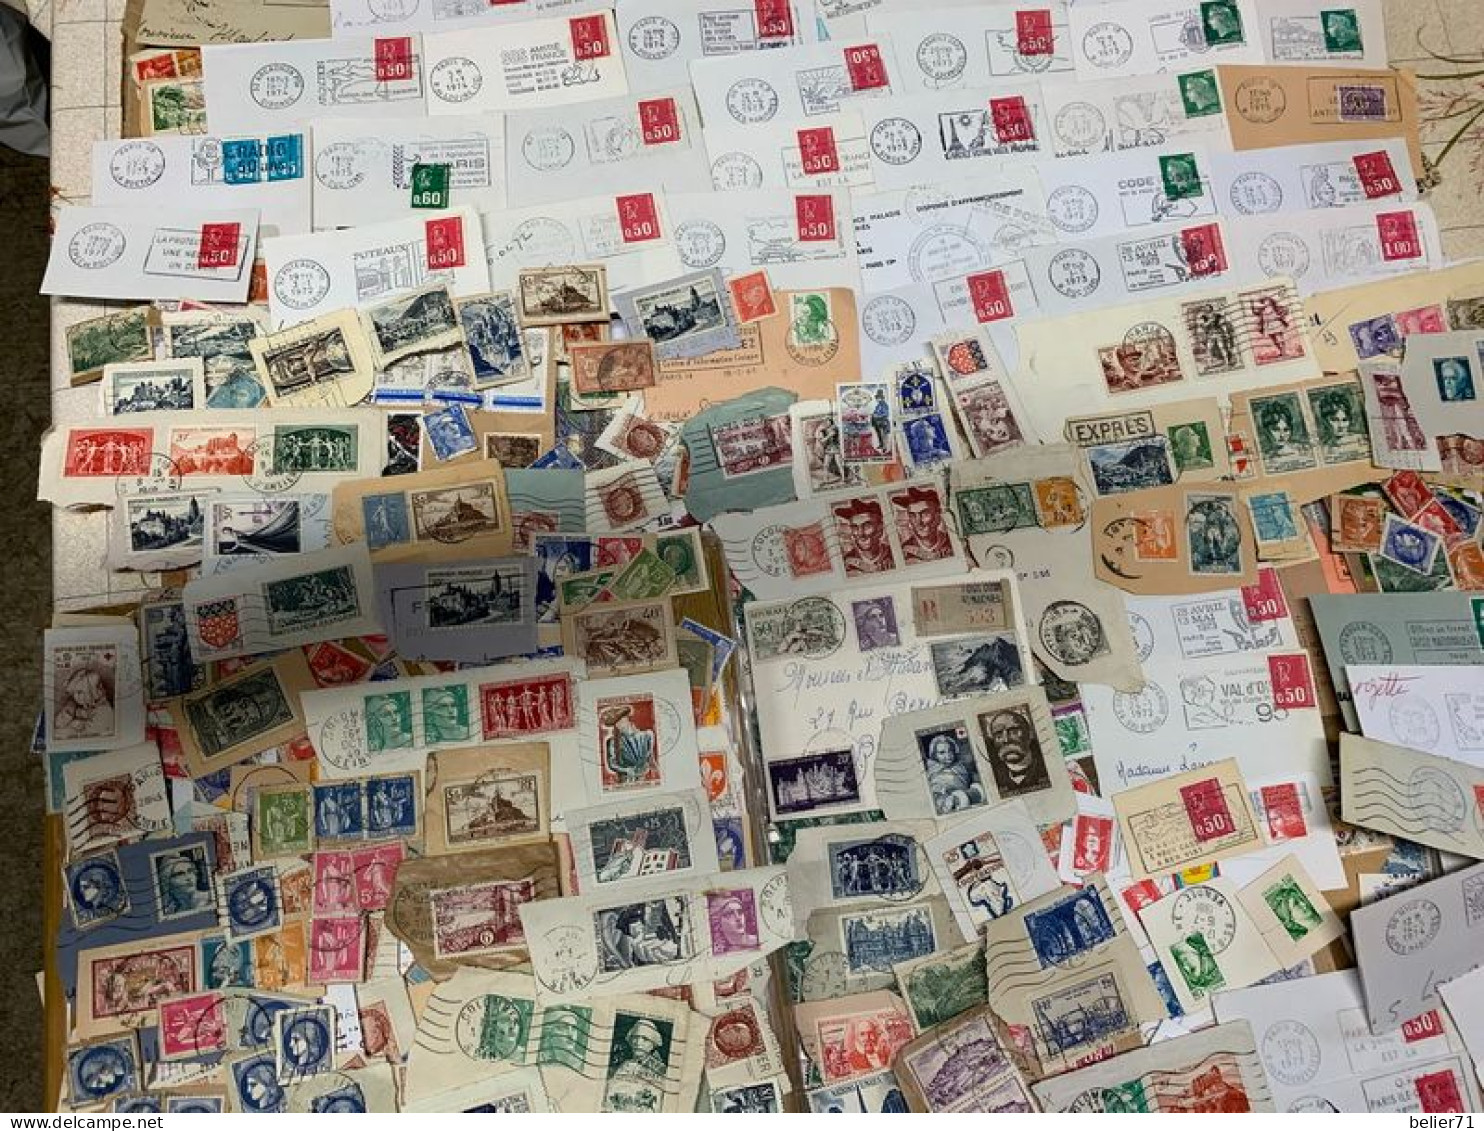 Vrac de timbres de France, toutes périodes décollés ou sur fragments